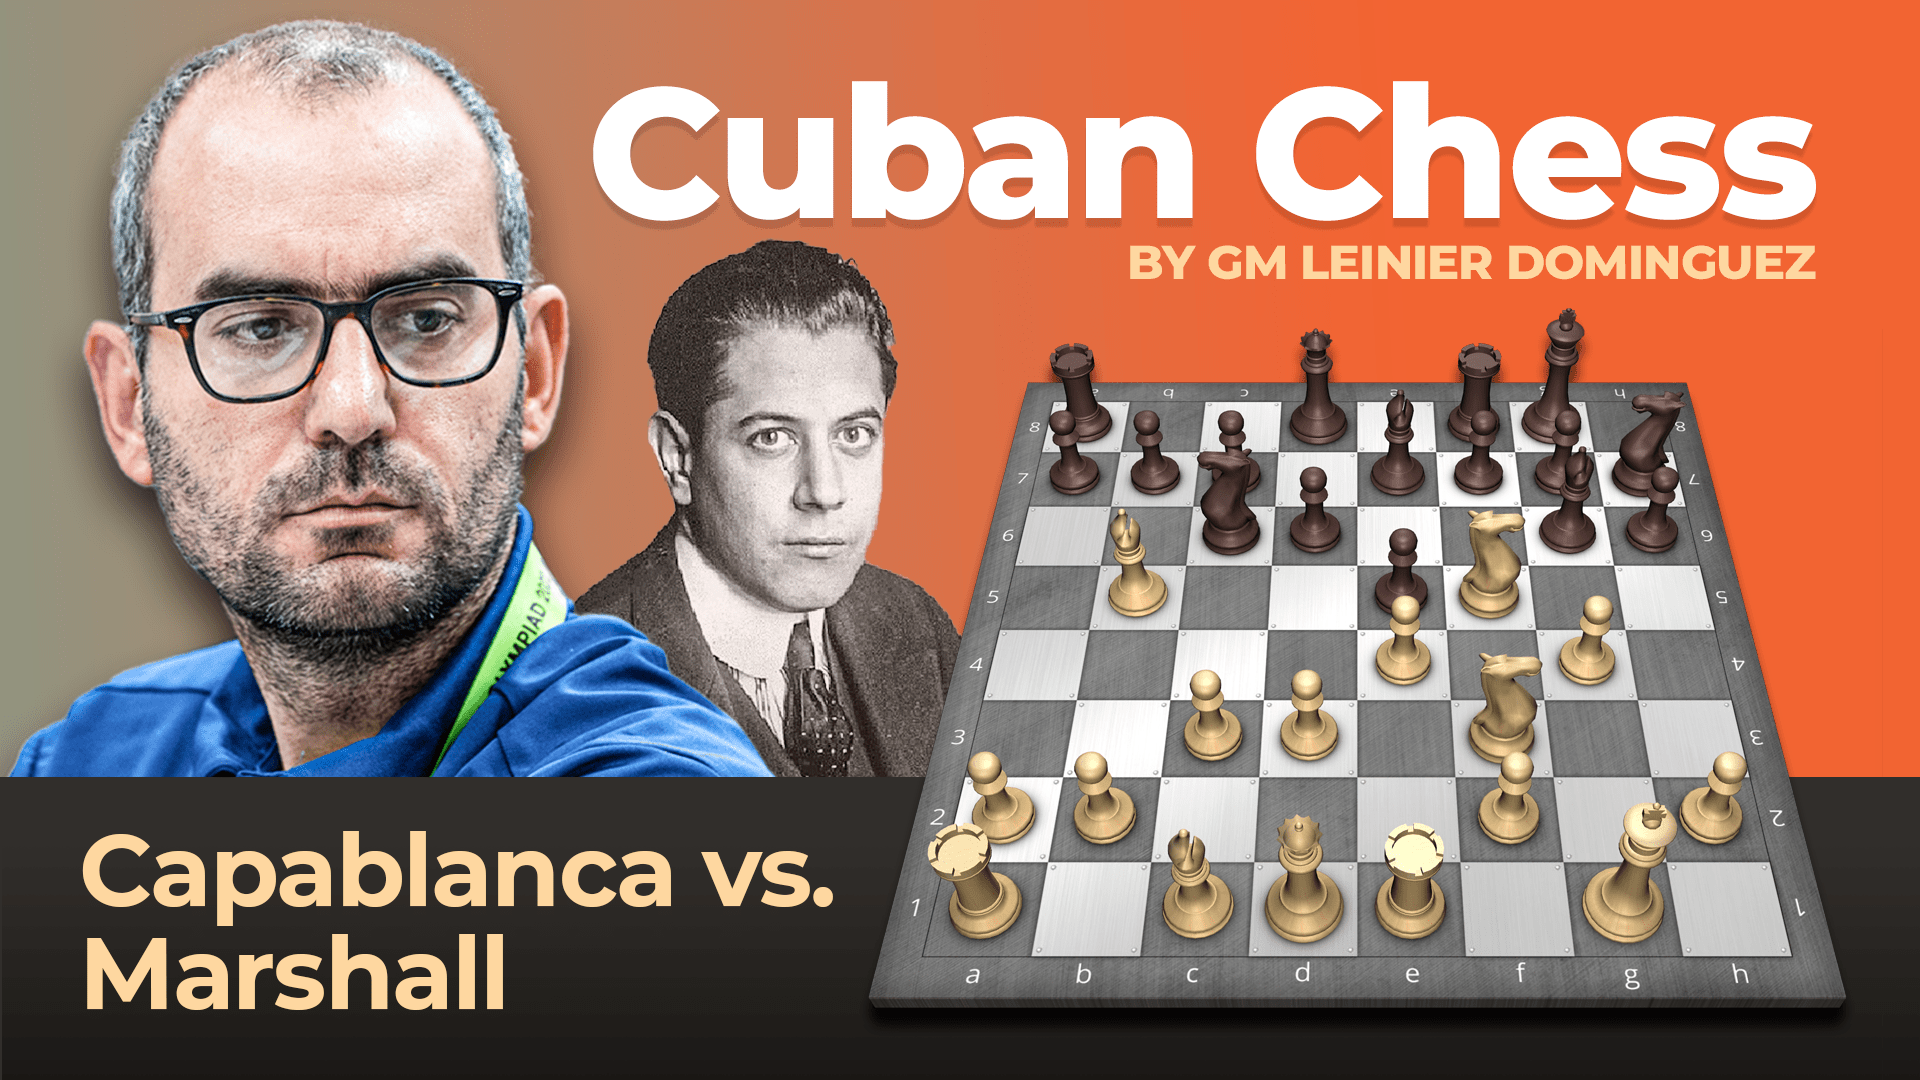 Checkmate! Imparando da Capablanca vs Marshall, cerca le falle!